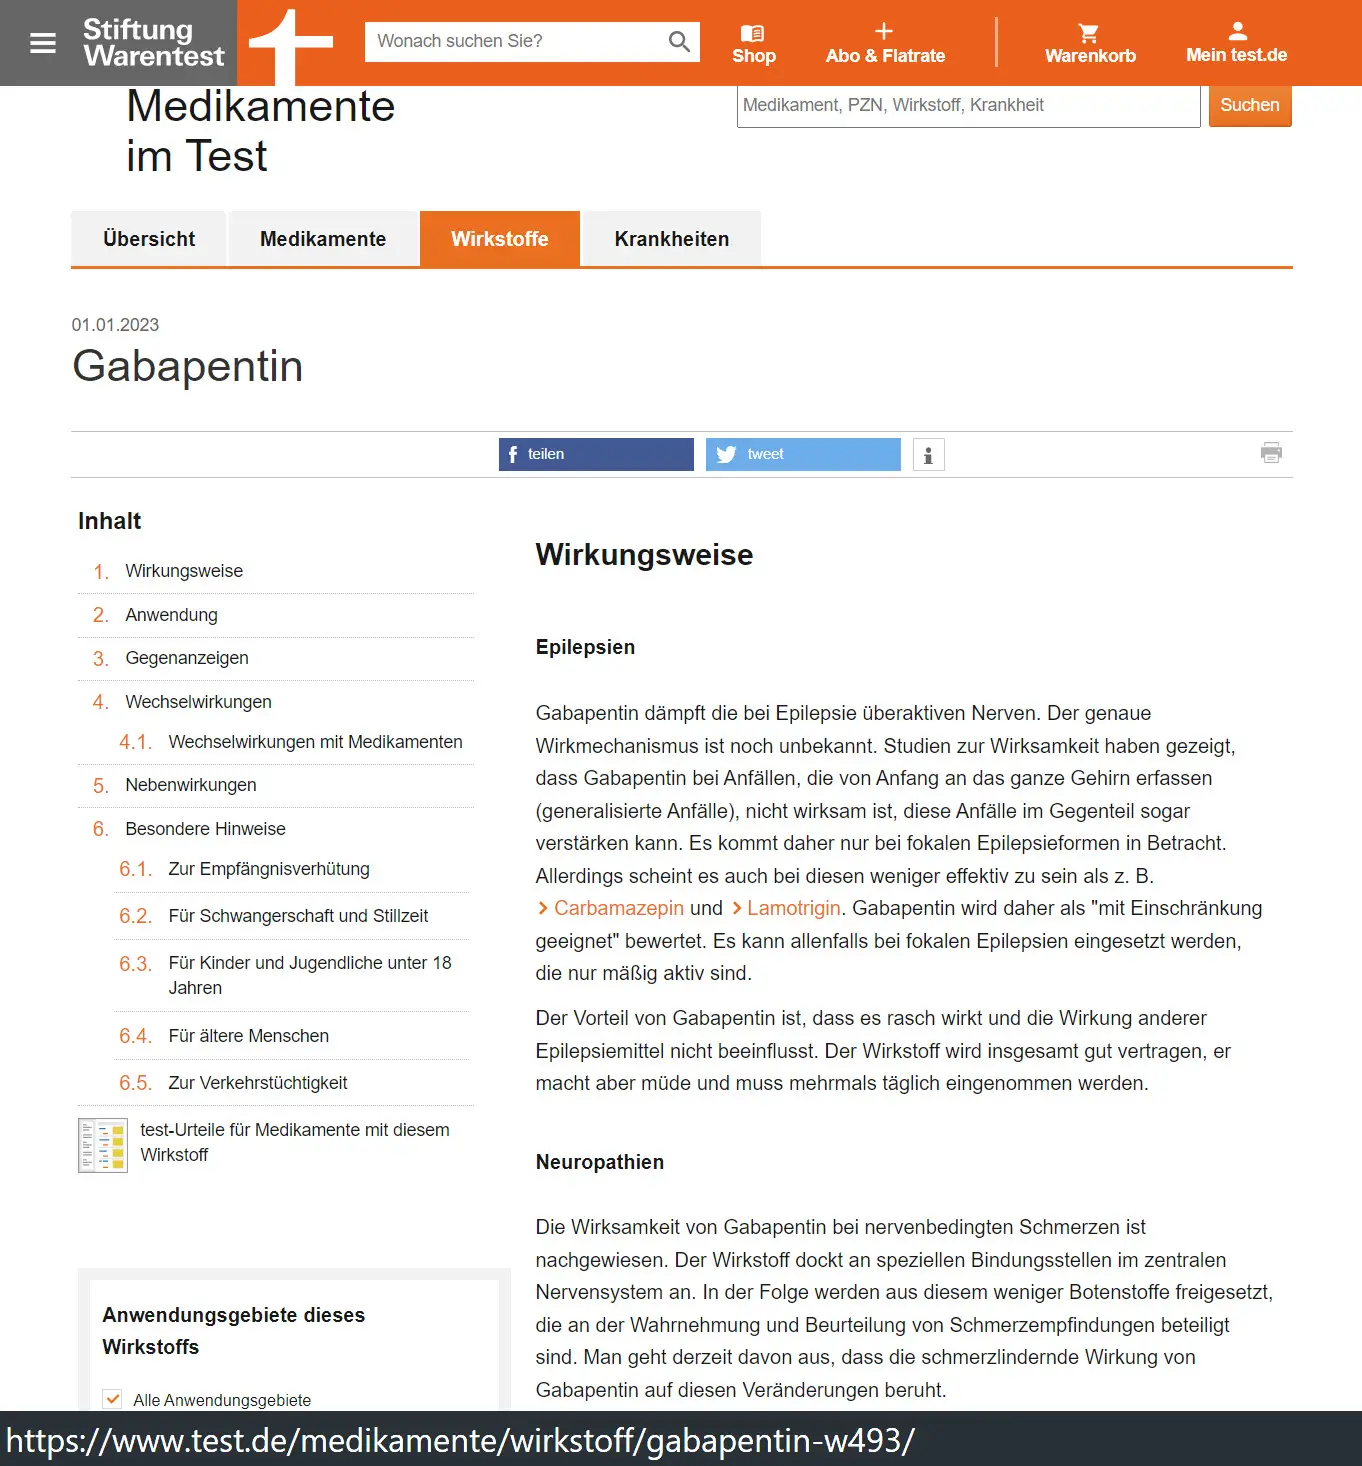 Gabapentinoide | Stiftung Warentest - Medikamente im Test: Gabapentin, Wirkungsweise bei Epilepsien und Neuropathien